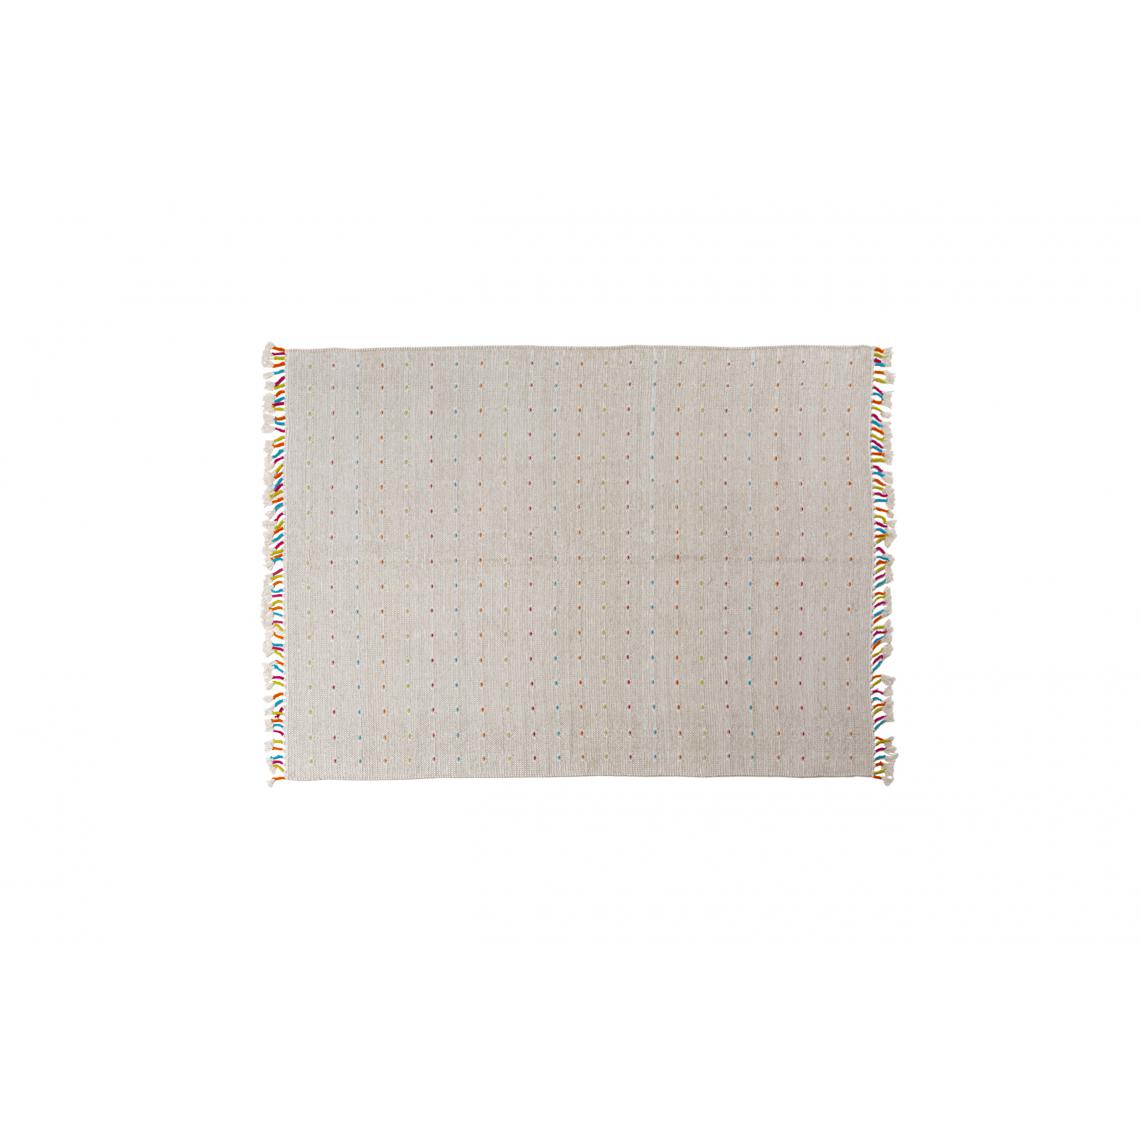 Alter - Tapis Texas moderne, style kilim, 100% coton, ivoire, 200x140cm - Tapis